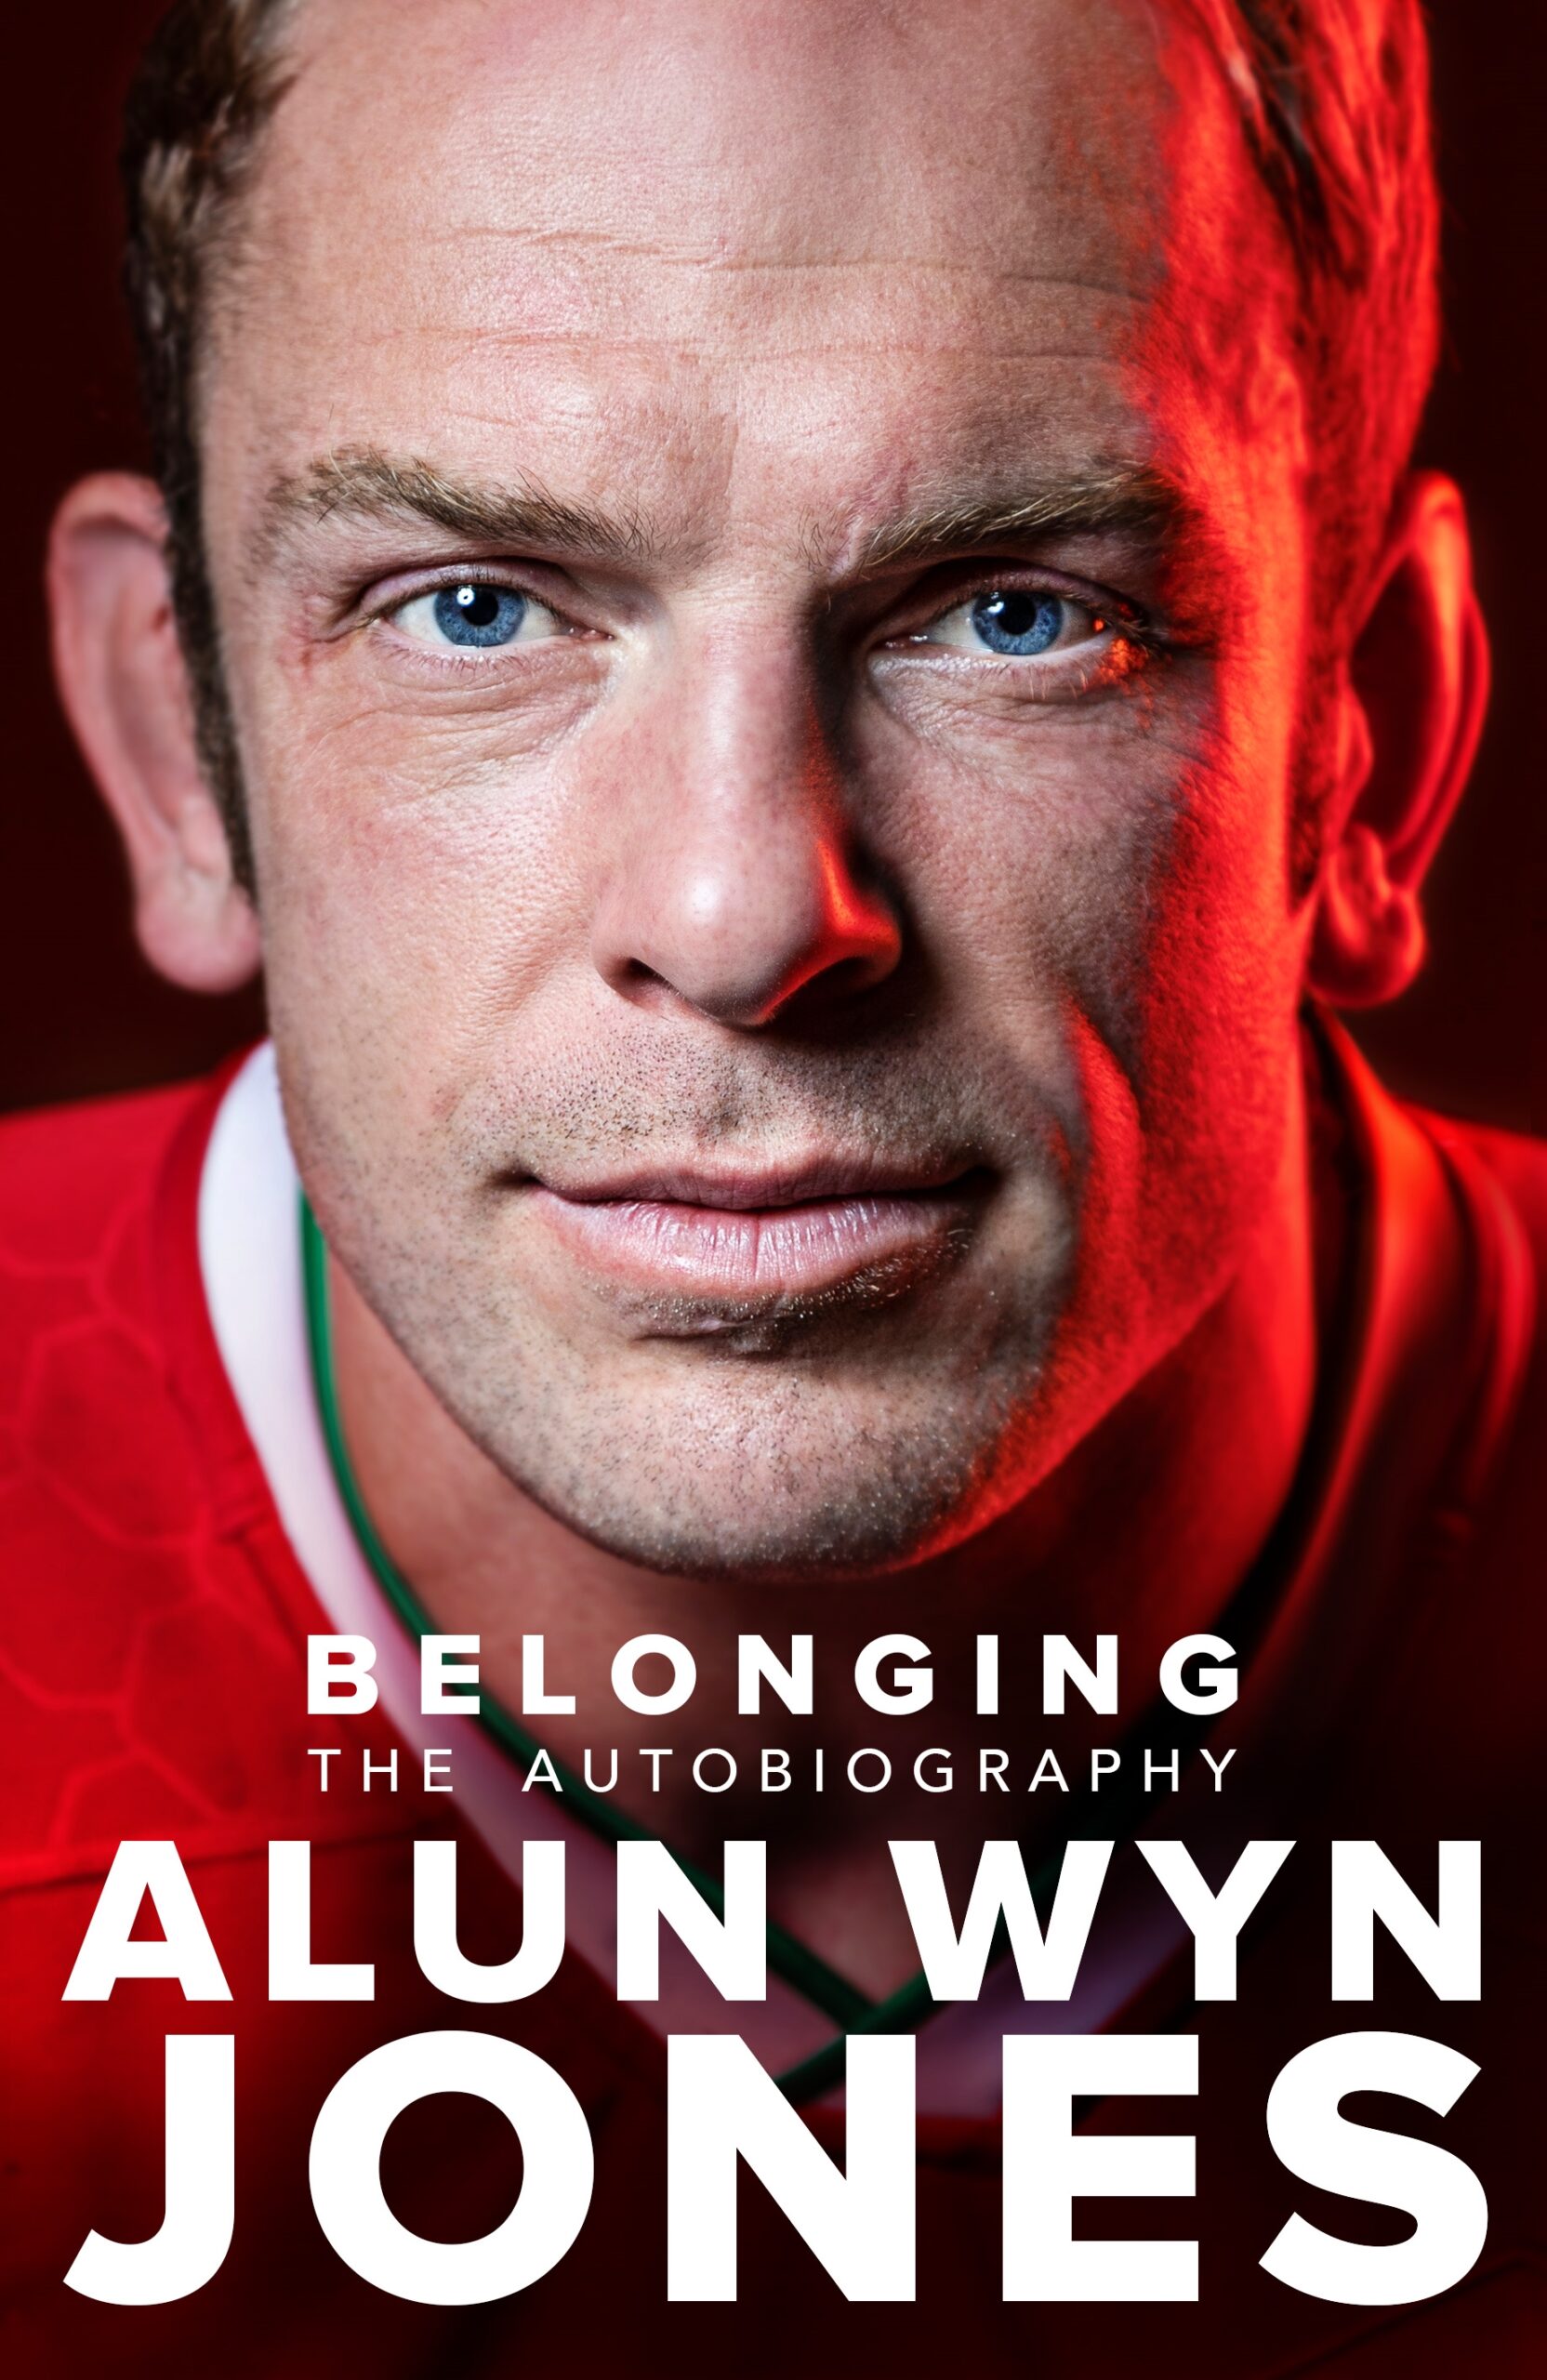 Belonging by Alun Wyn Jones